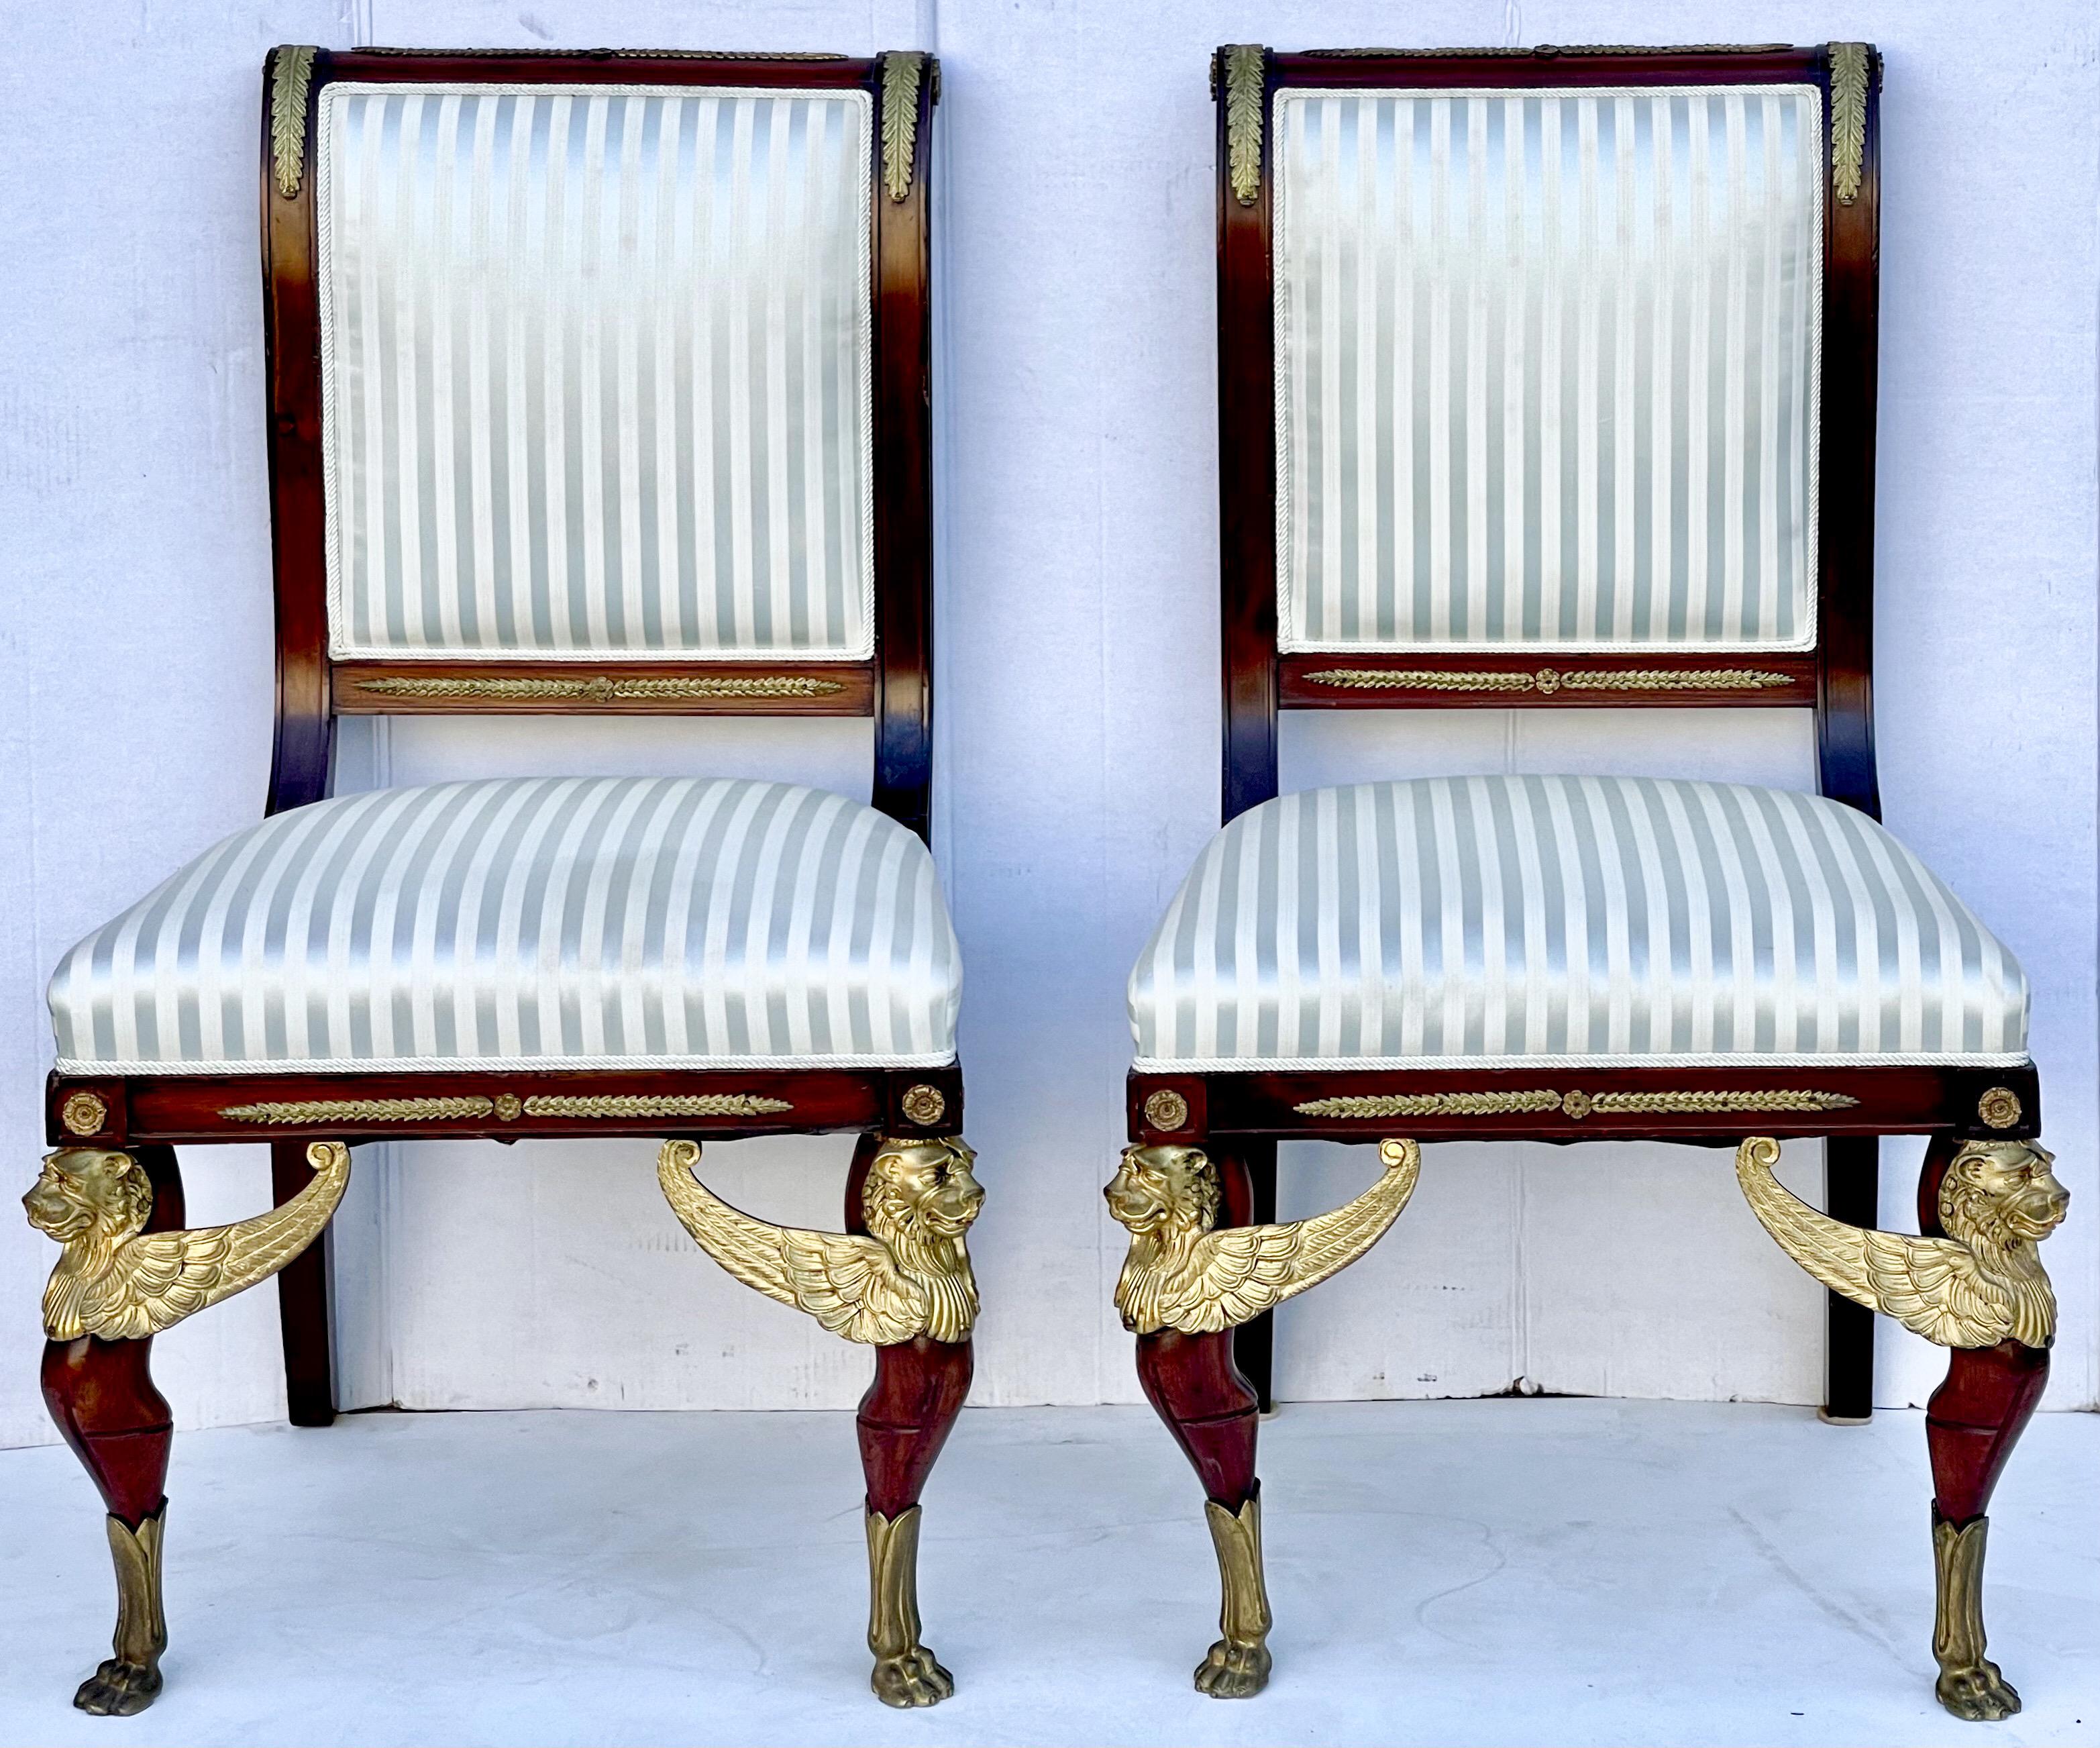 Es handelt sich um ein Paar französischer Empire-Beistellstühle aus Mahagoni des späten 19. Jahrhunderts mit vergoldeten Bronzebeschlägen. Beachten Sie die Griffe an den Beinen! Der Stoff scheint aus Seide zu sein. Es ist im Vintage-Stil und in sehr